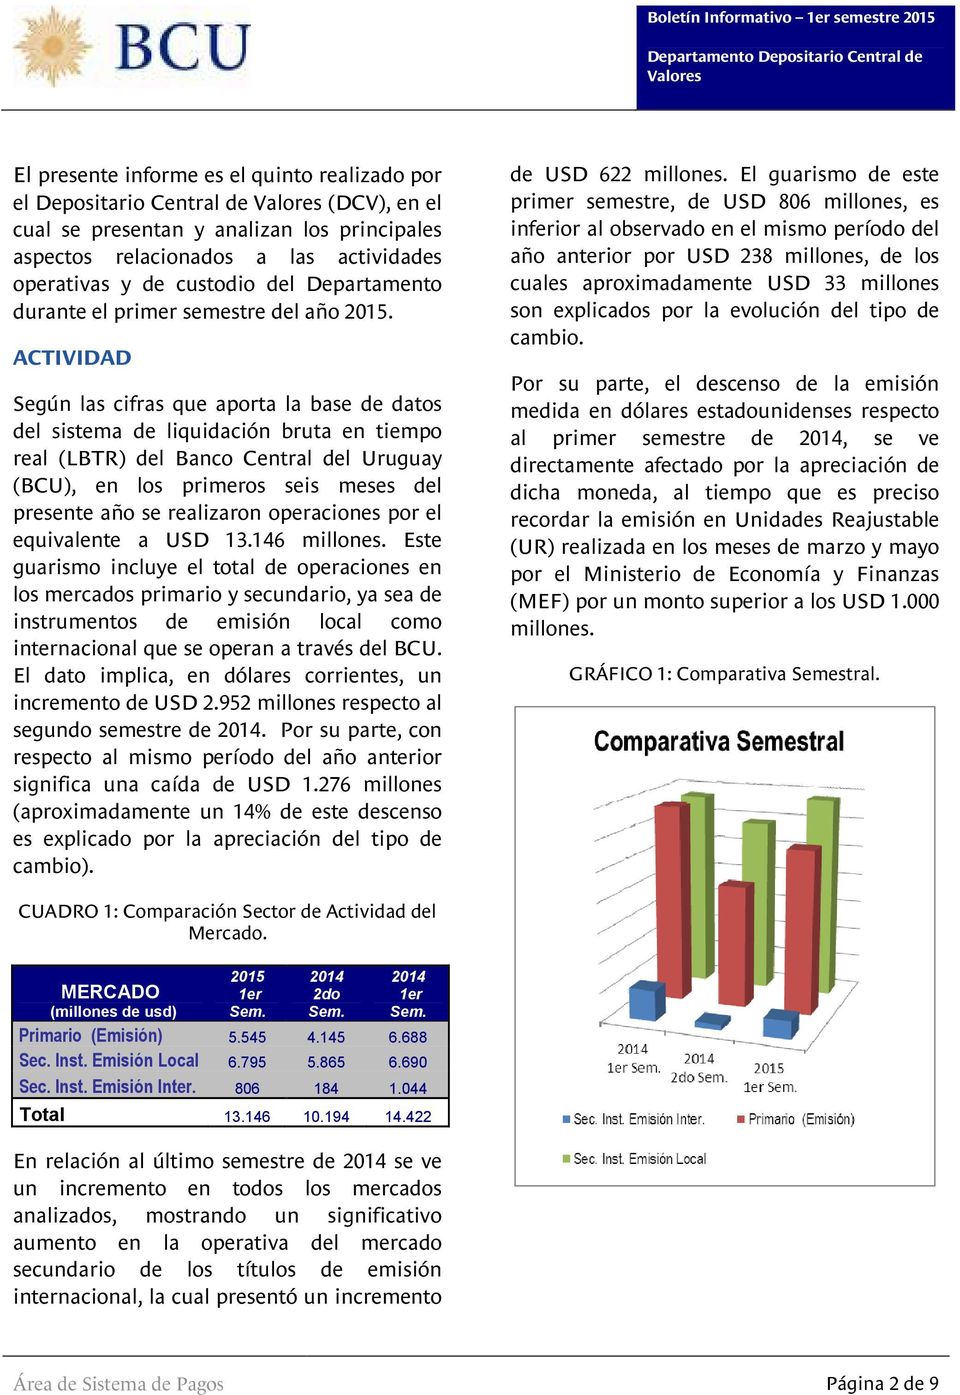 ACTIVIDAD Según las cifras que aporta la base de datos del sistema de liquidación bruta en tiempo real (LBTR) del Banco Central del Uruguay (BCU), en los primeros seis meses del presente año se